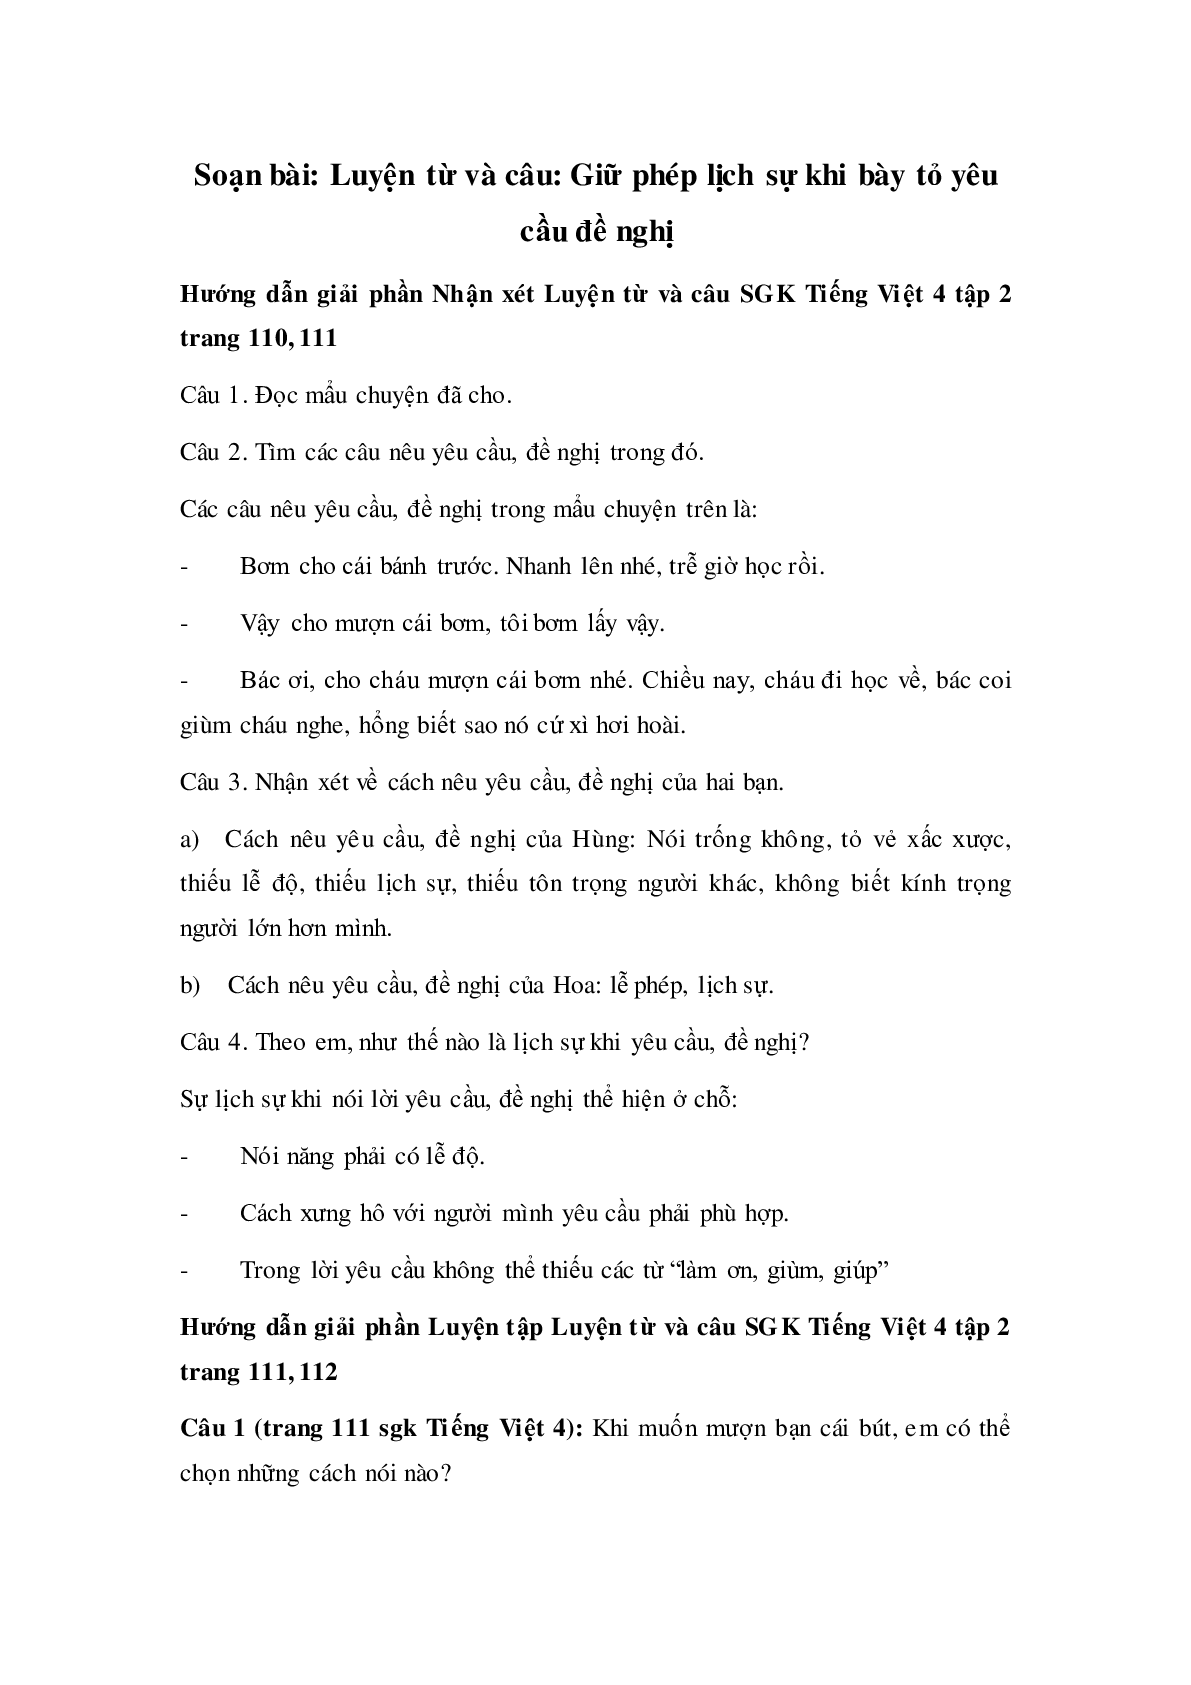 Soạn Tiếng Việt lớp 4: Luyện từ và câu: Giữ phép lịch sự khi bày tỏ yêu cầu đề nghị mới nhất (trang 1)